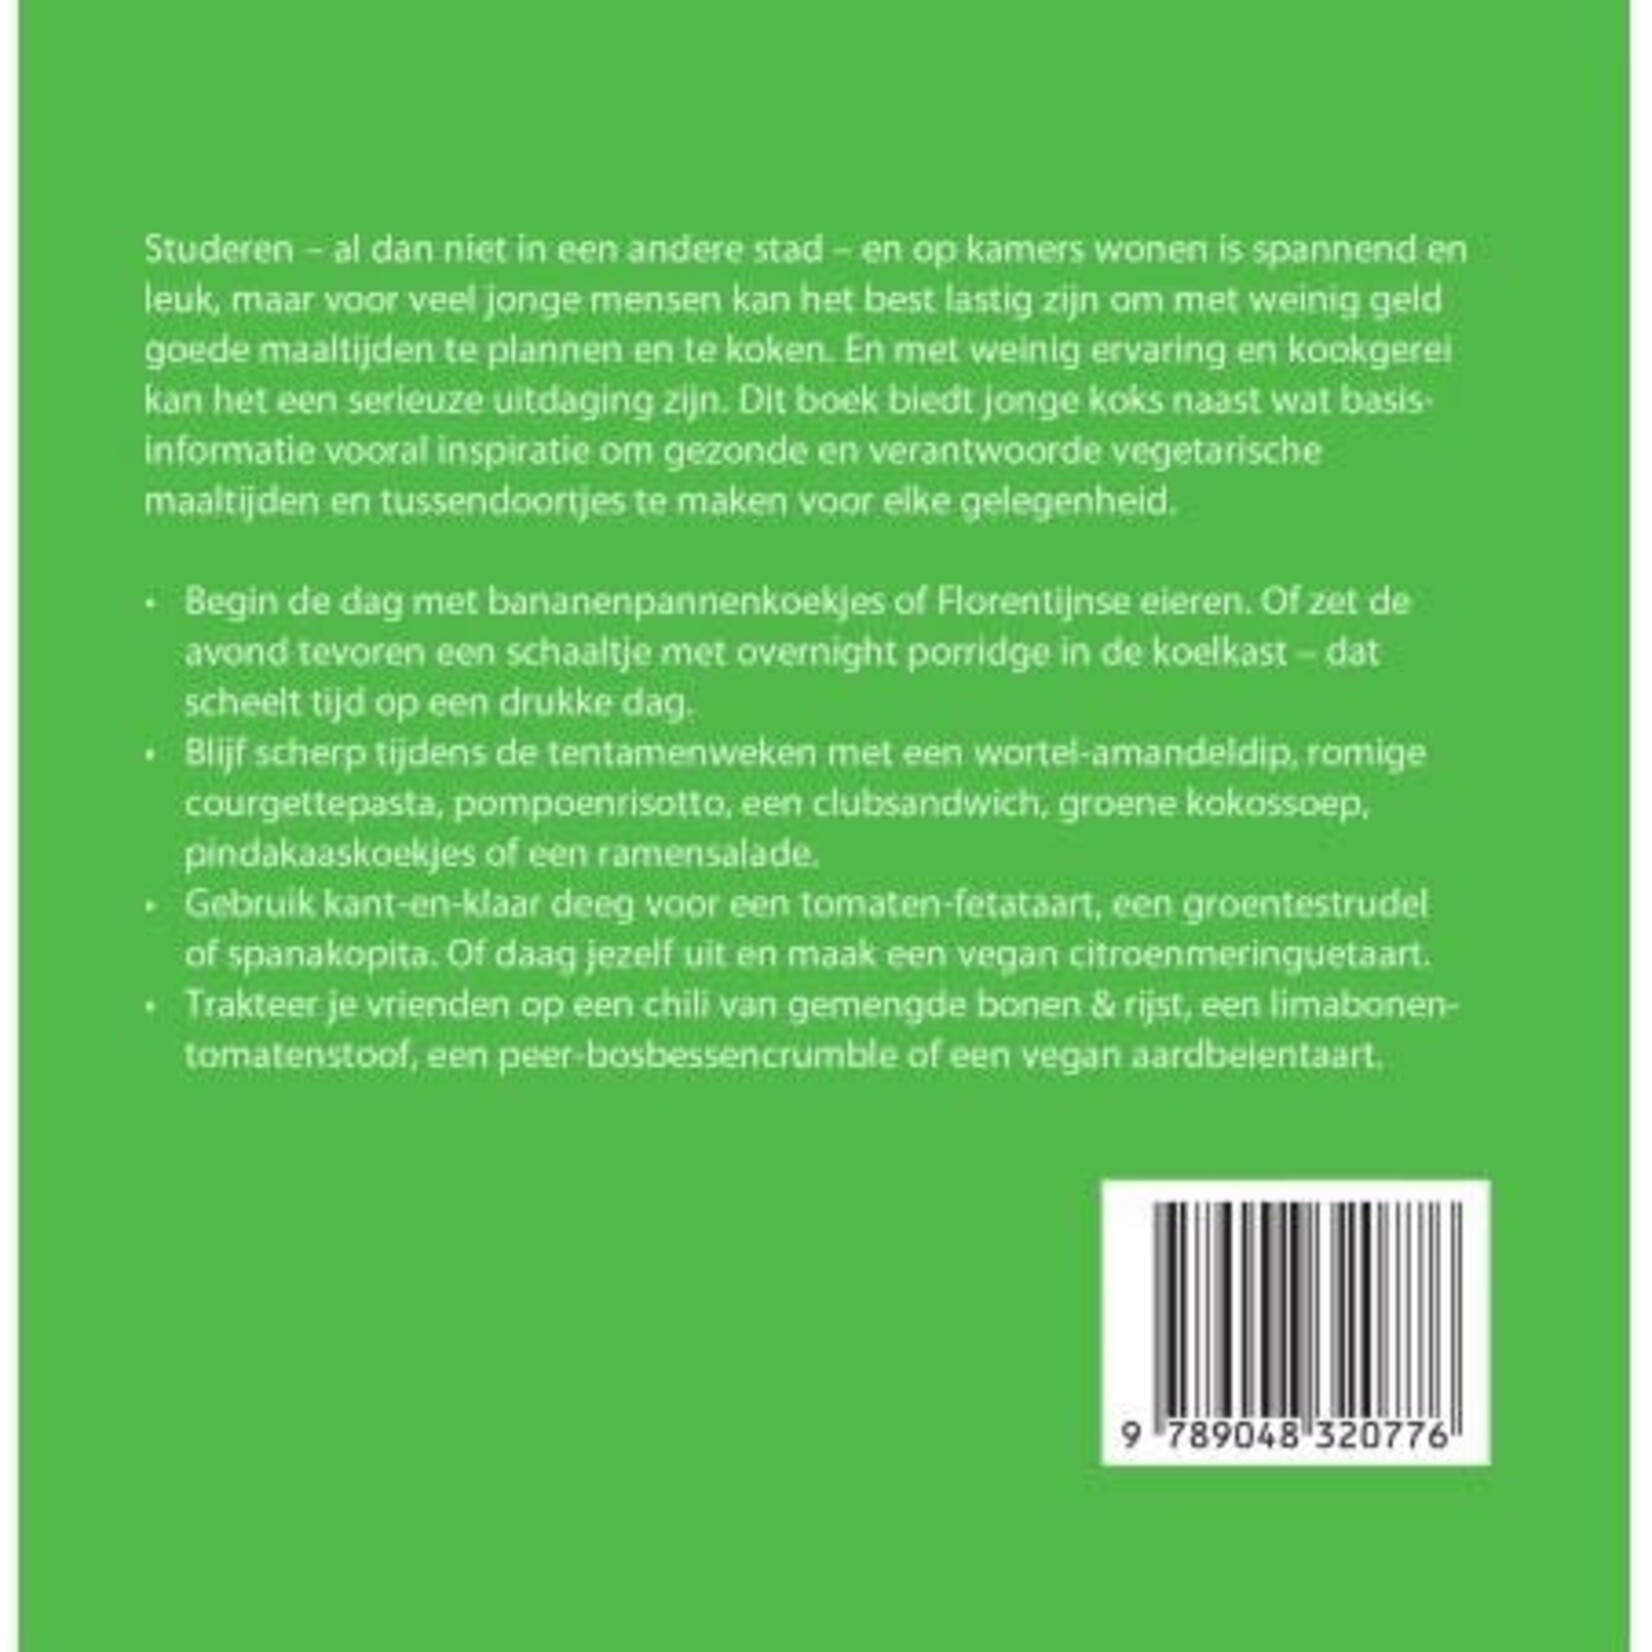 Diverse Merken 500 Veggie studenten maaltijden Veltman Uitgevers ISBN 9789048320776